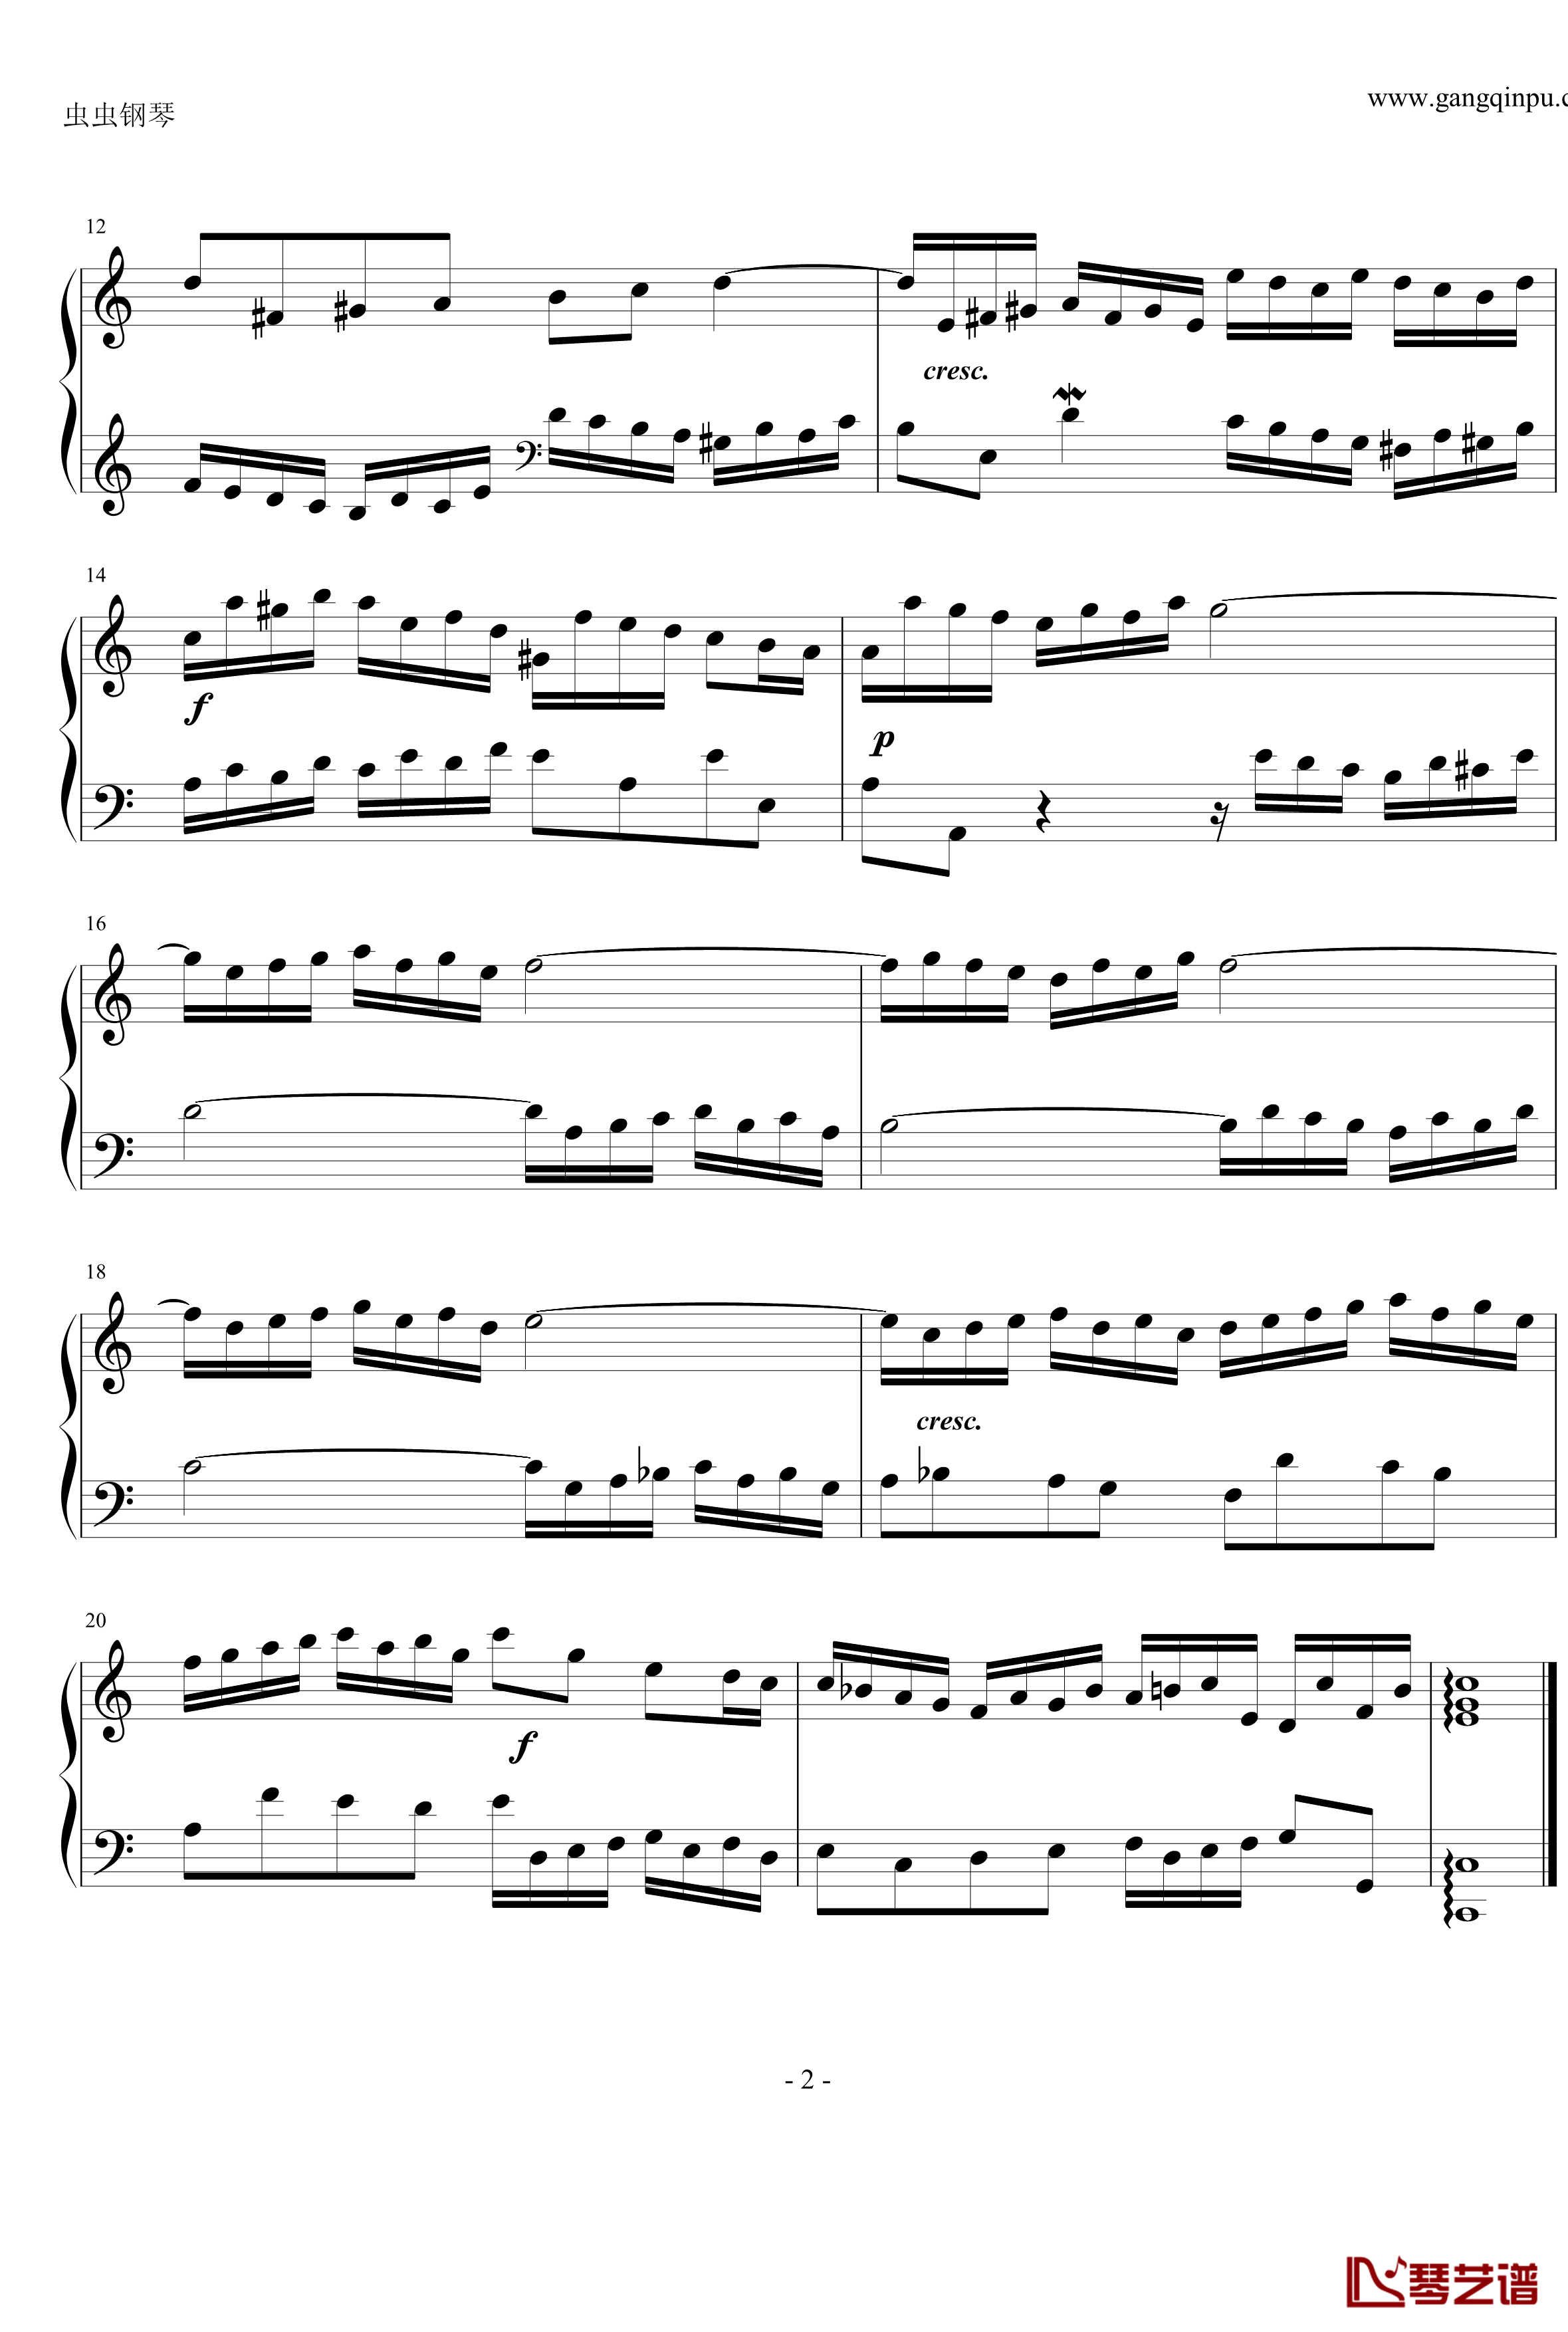 二部创意曲第一号C大调钢琴谱-巴赫-P.E.Bach2